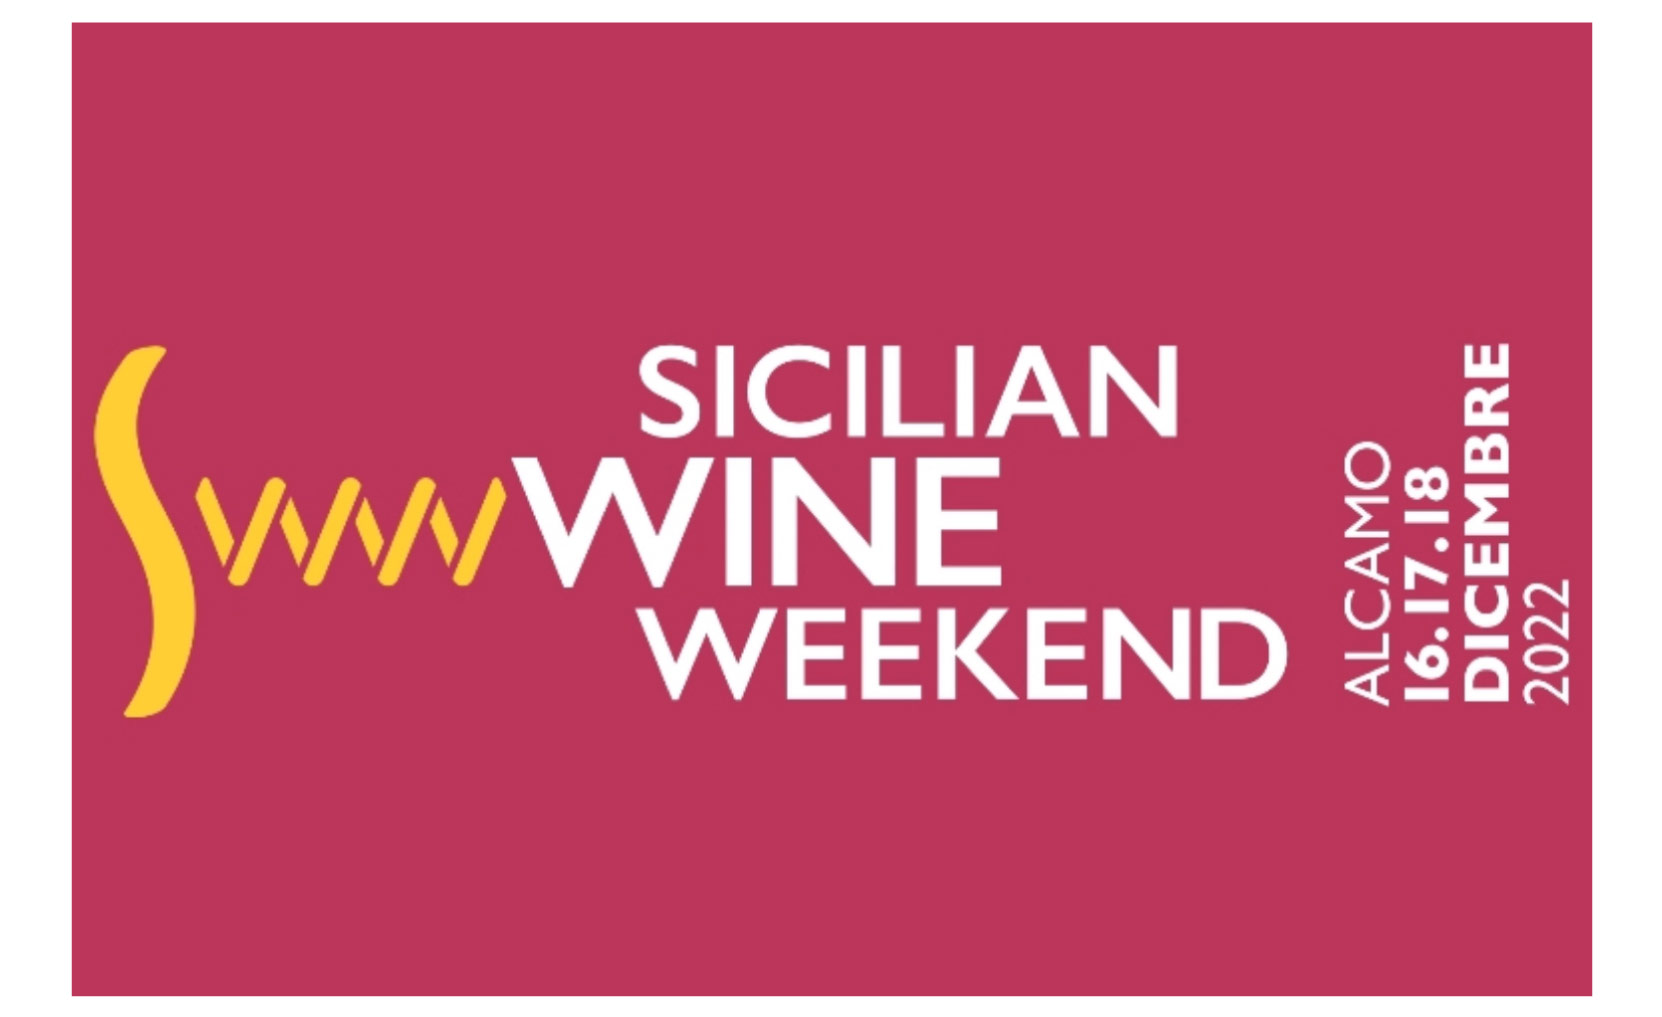 Wine in Sicily